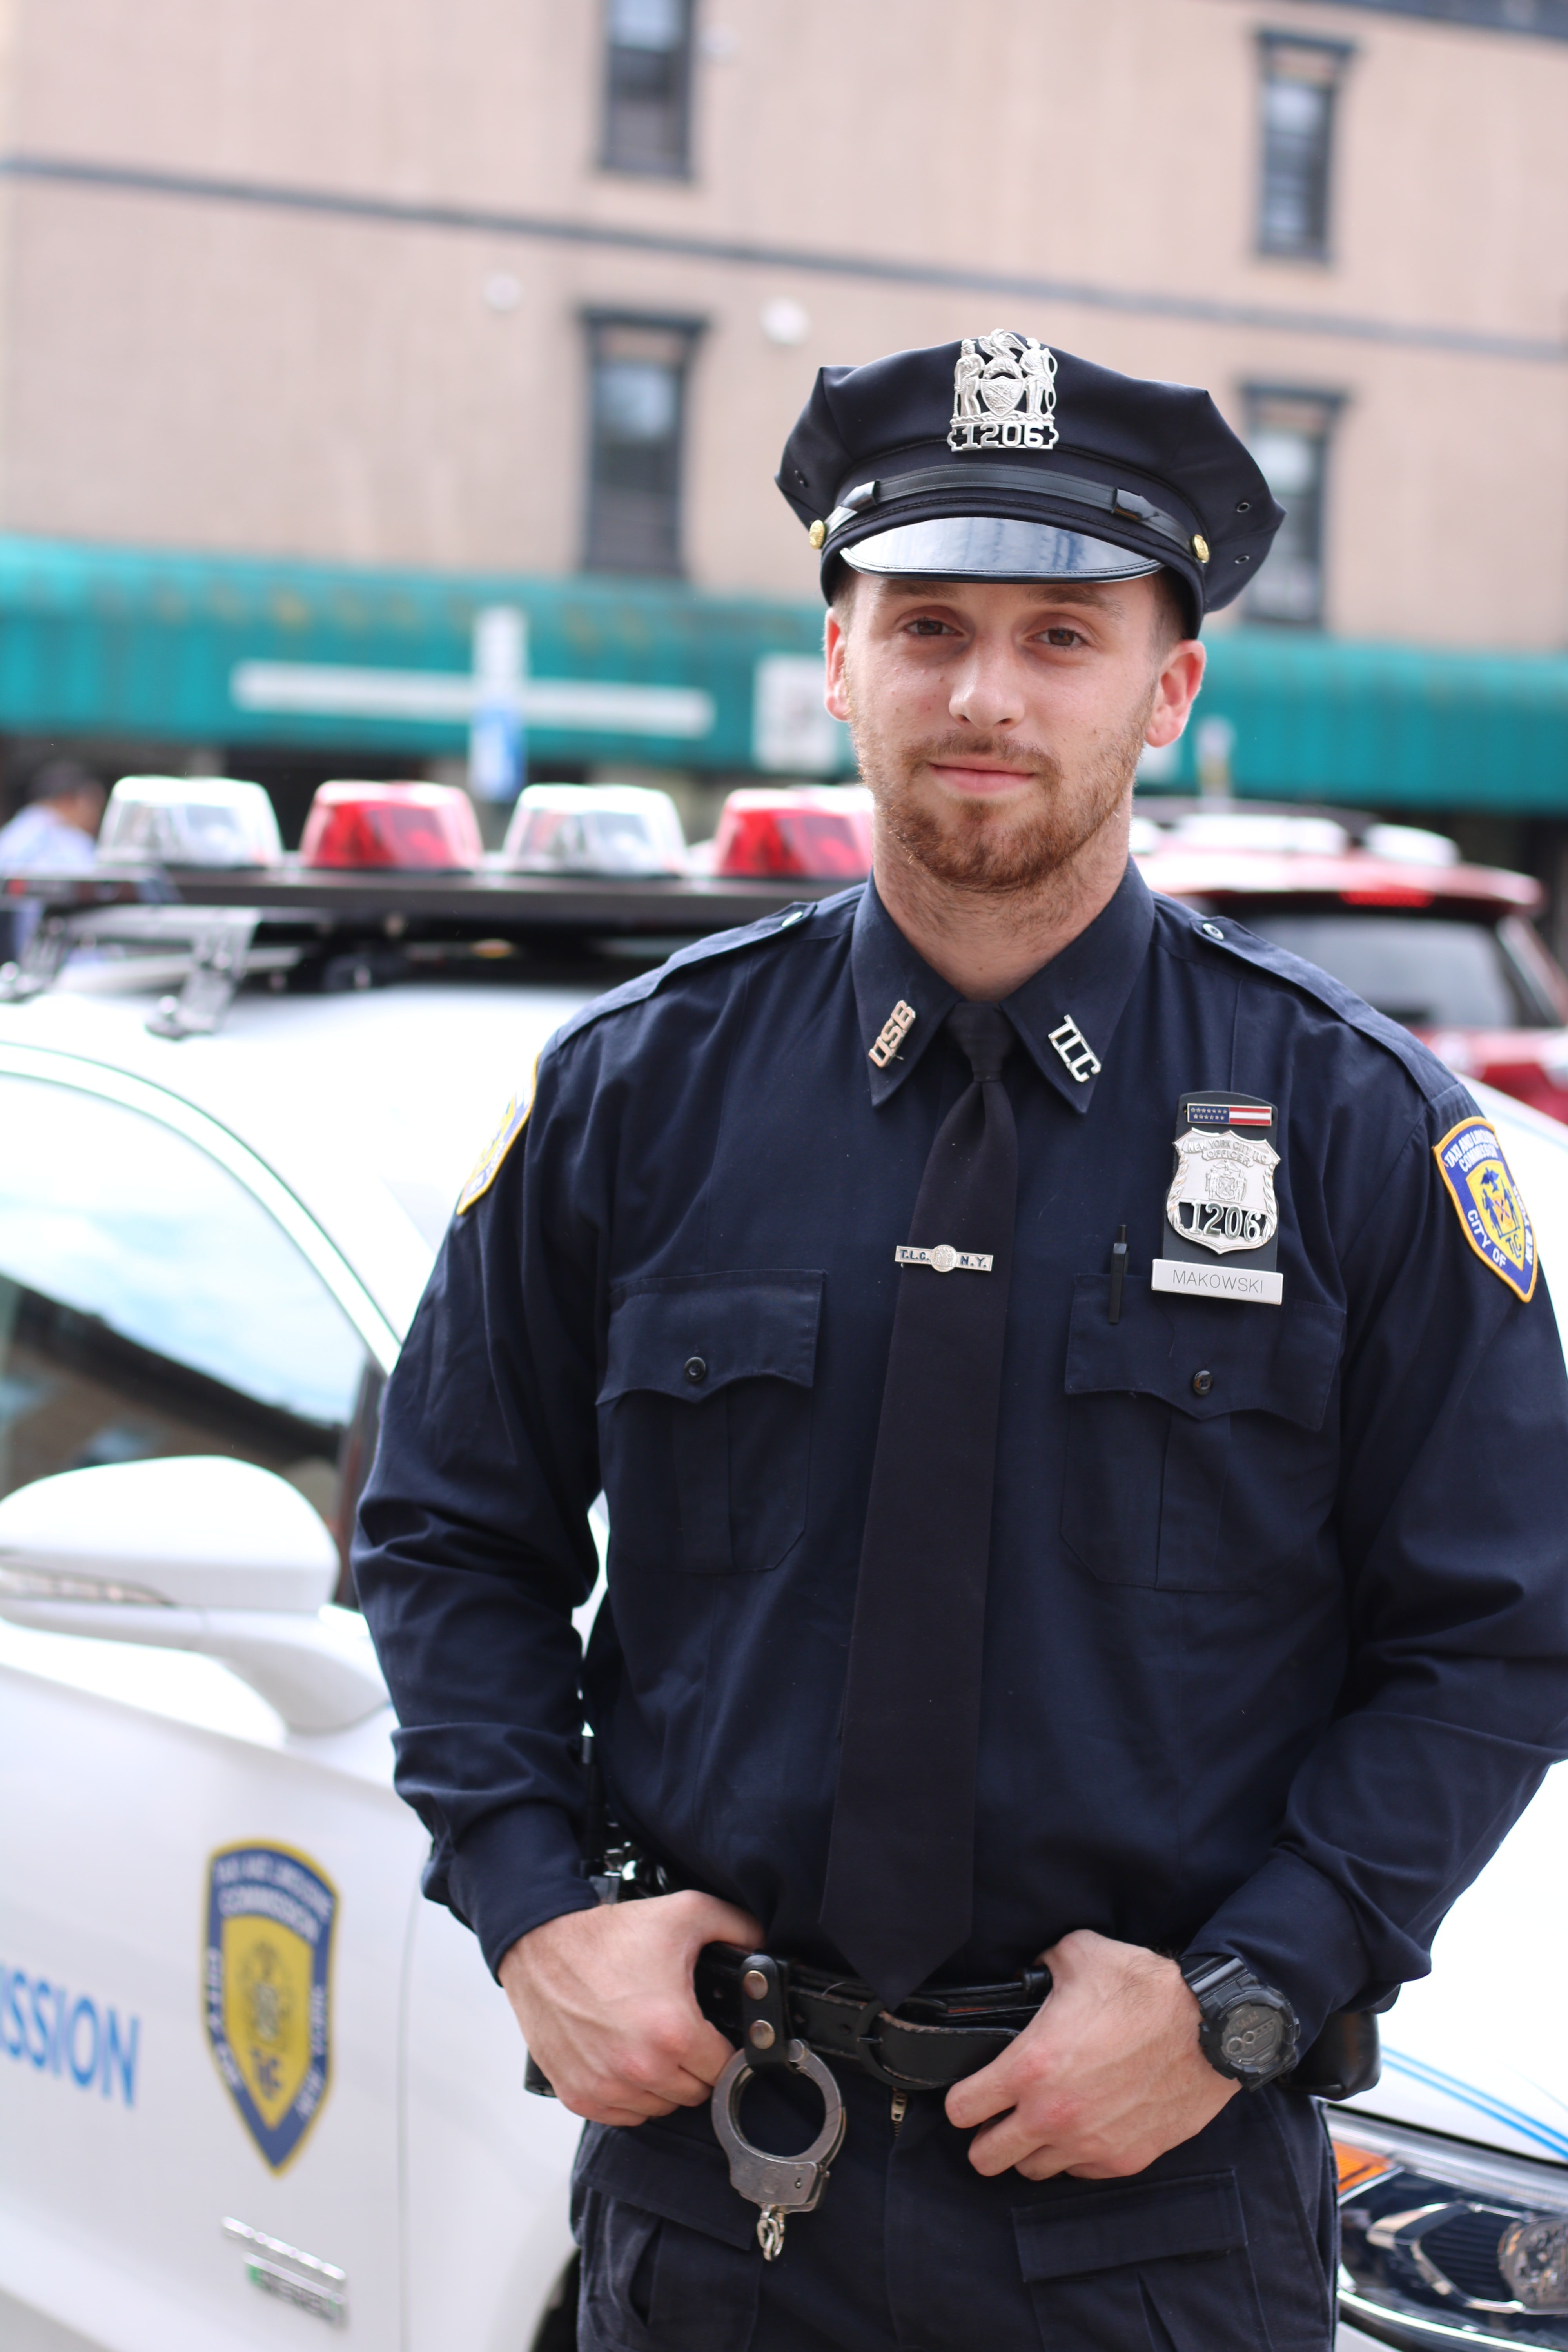 Officer Bohlen war David gegenüber misstrauisch | Quelle: Unsplash